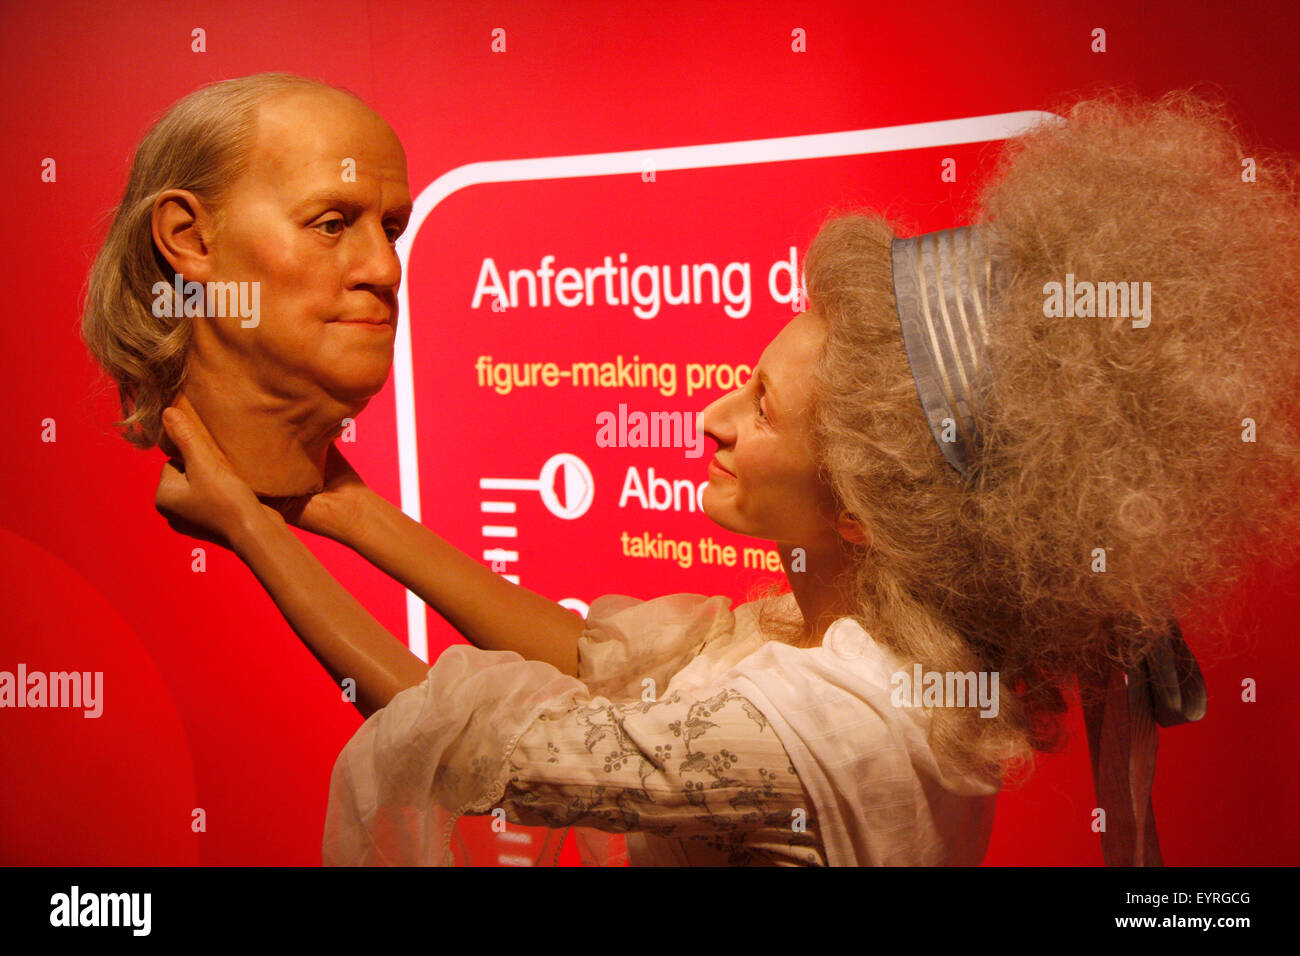 Der Kopf von Benjamin Franklin - Wachsfigur bei Madame Tussauds, 10. Juli 2008, Unter den Linden, Berlin-Mitte. Foto Stock